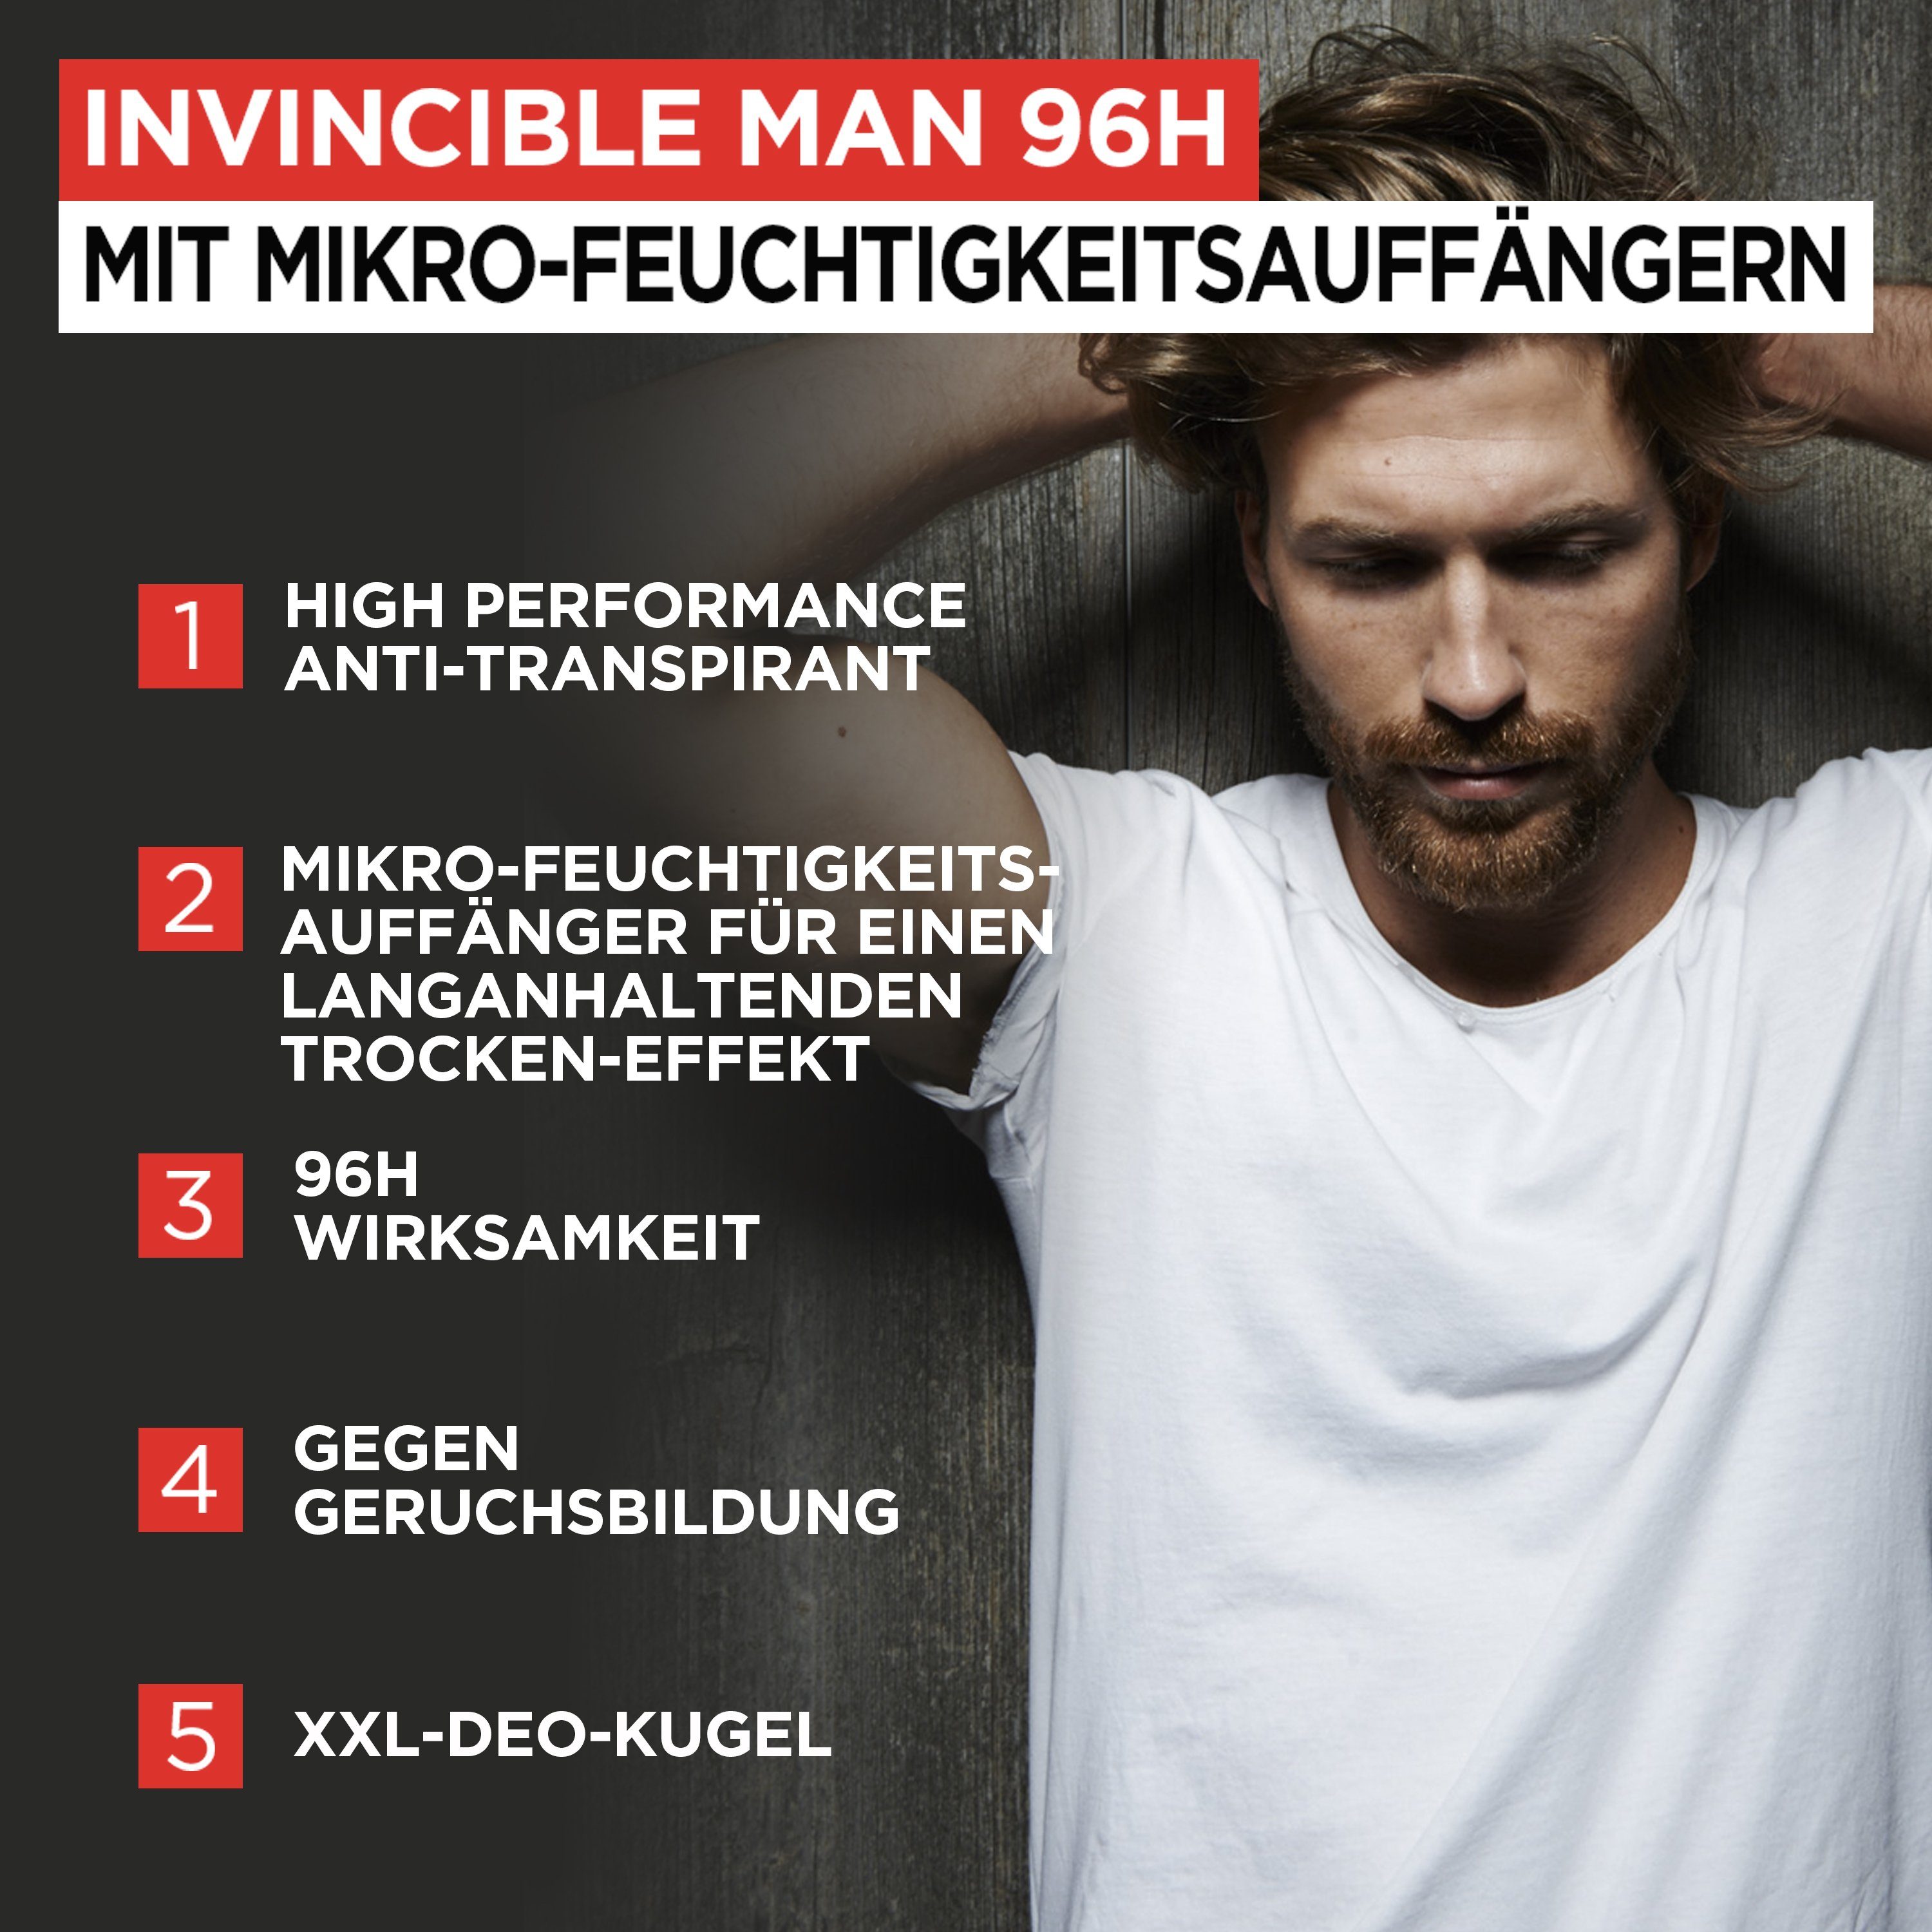 Trockenschutz Deo-Roller Man PARIS Invincible EXPERT 96H mit Non-Stop Anti-Transpirant L'ORÉAL MEN